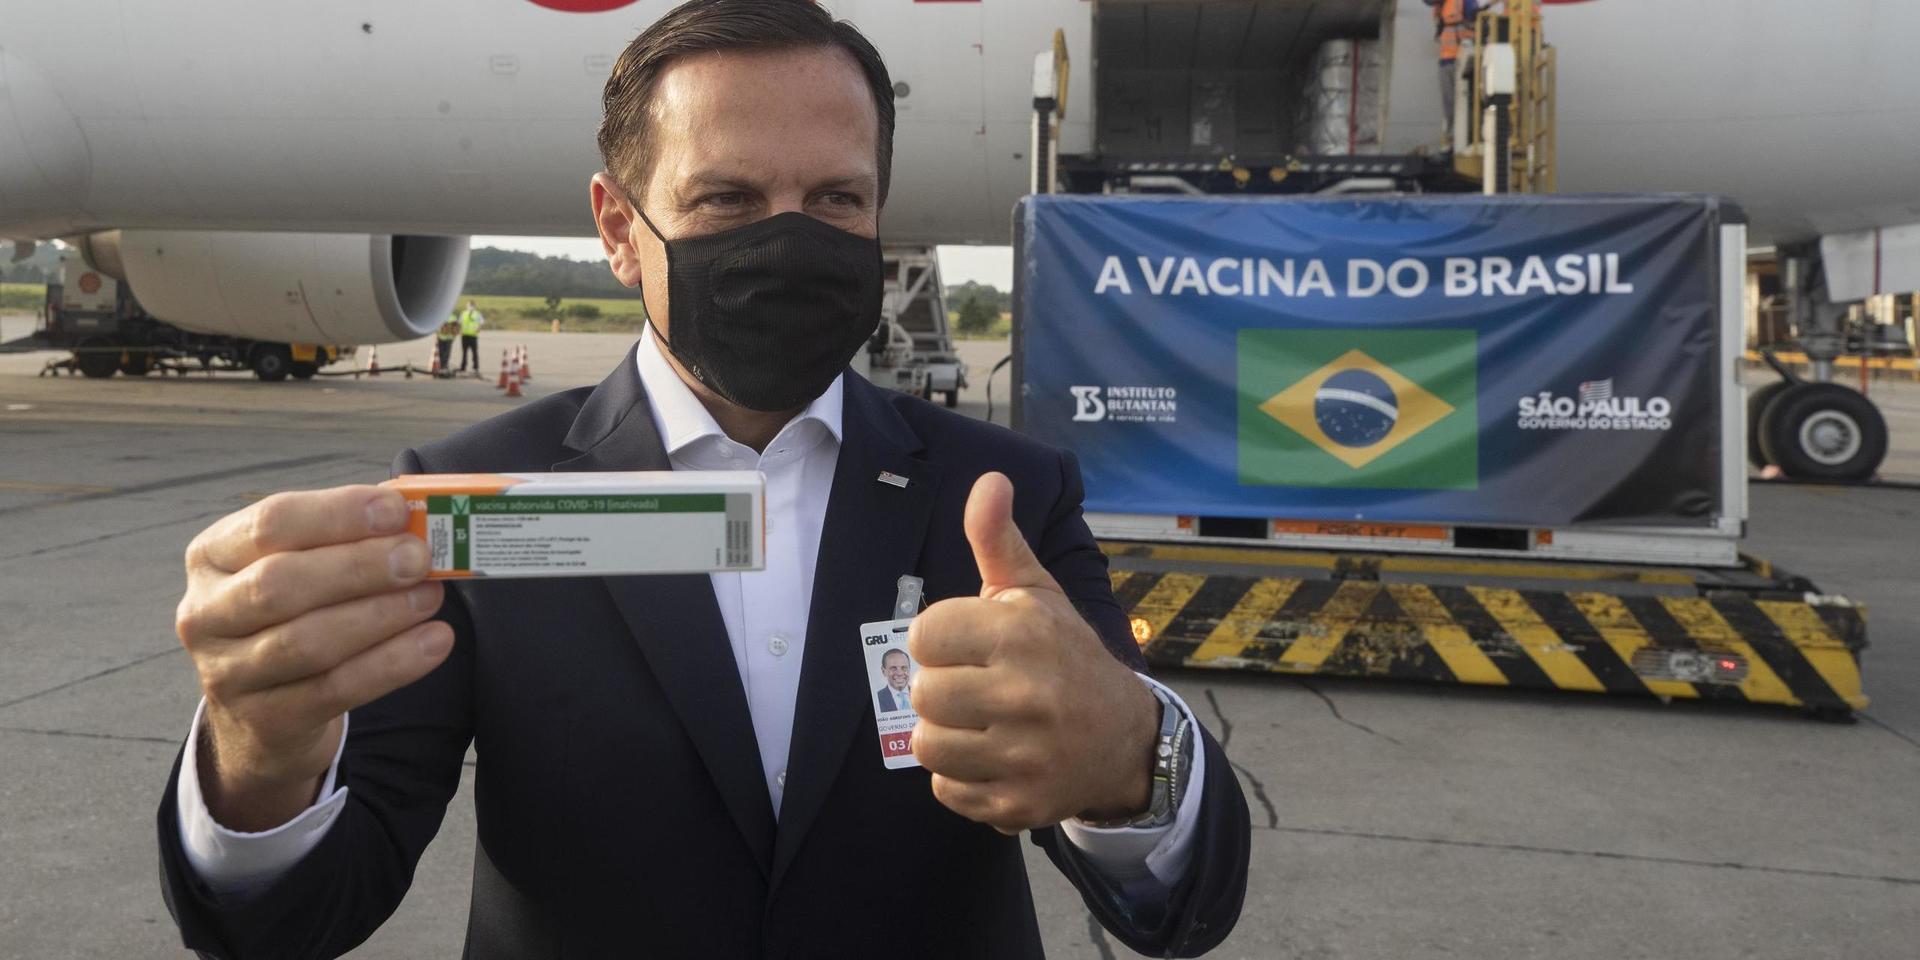 Sao Paulos guvernör Joao Doria visar stolt upp den första sändningen med det kinesiska vaccinet CoronaVac som skickats till Brasilien.